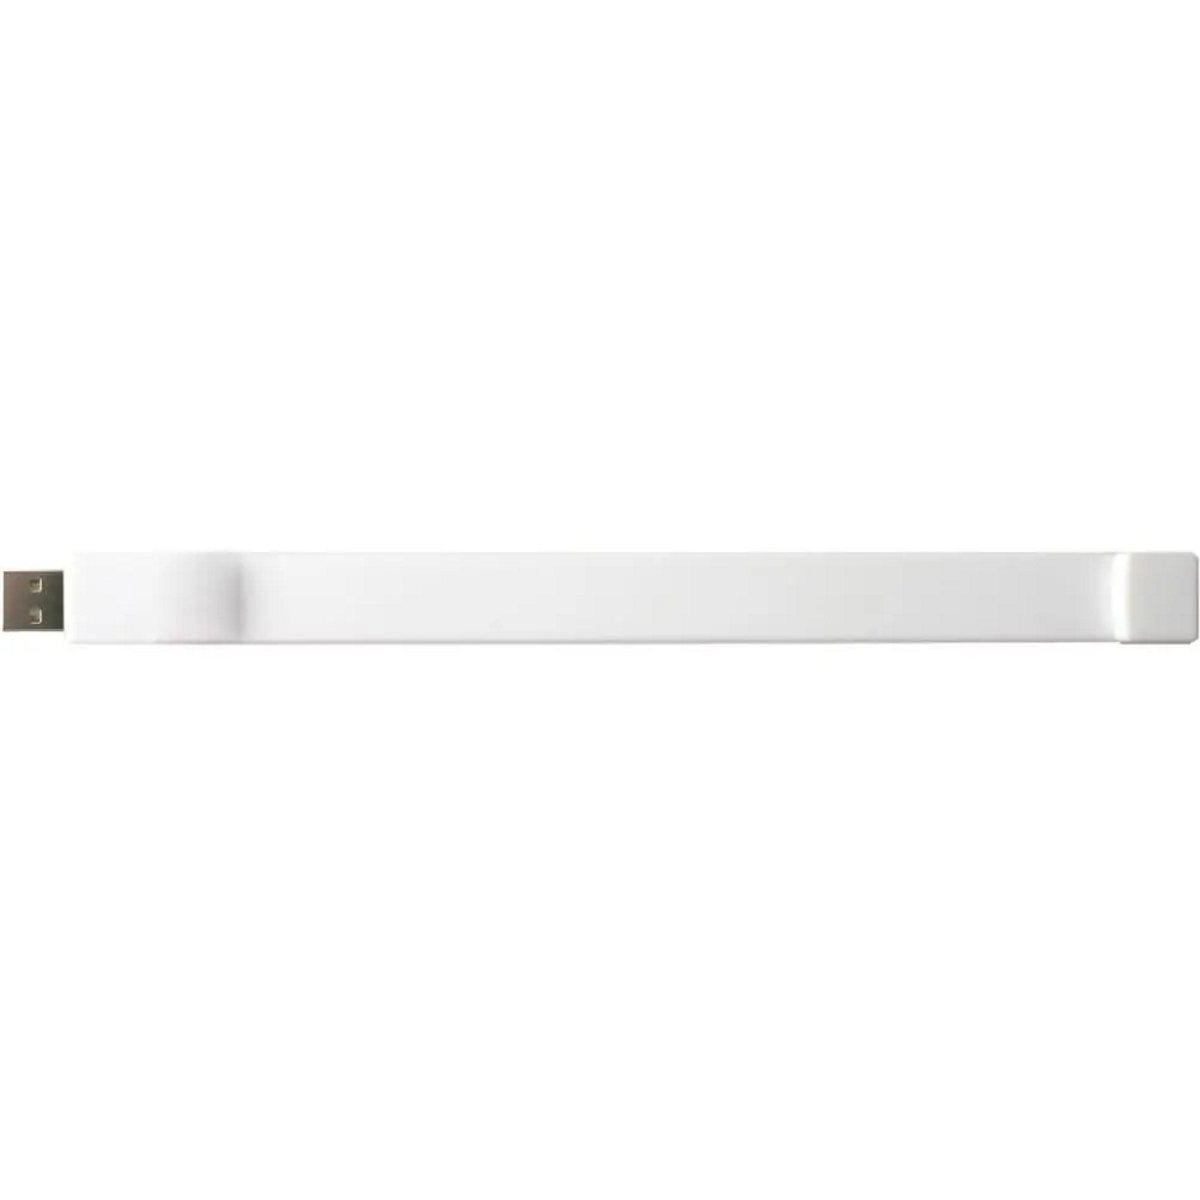 USB GERMANY Silicon-Armband USB-Stick (Weiß, 16 GB)